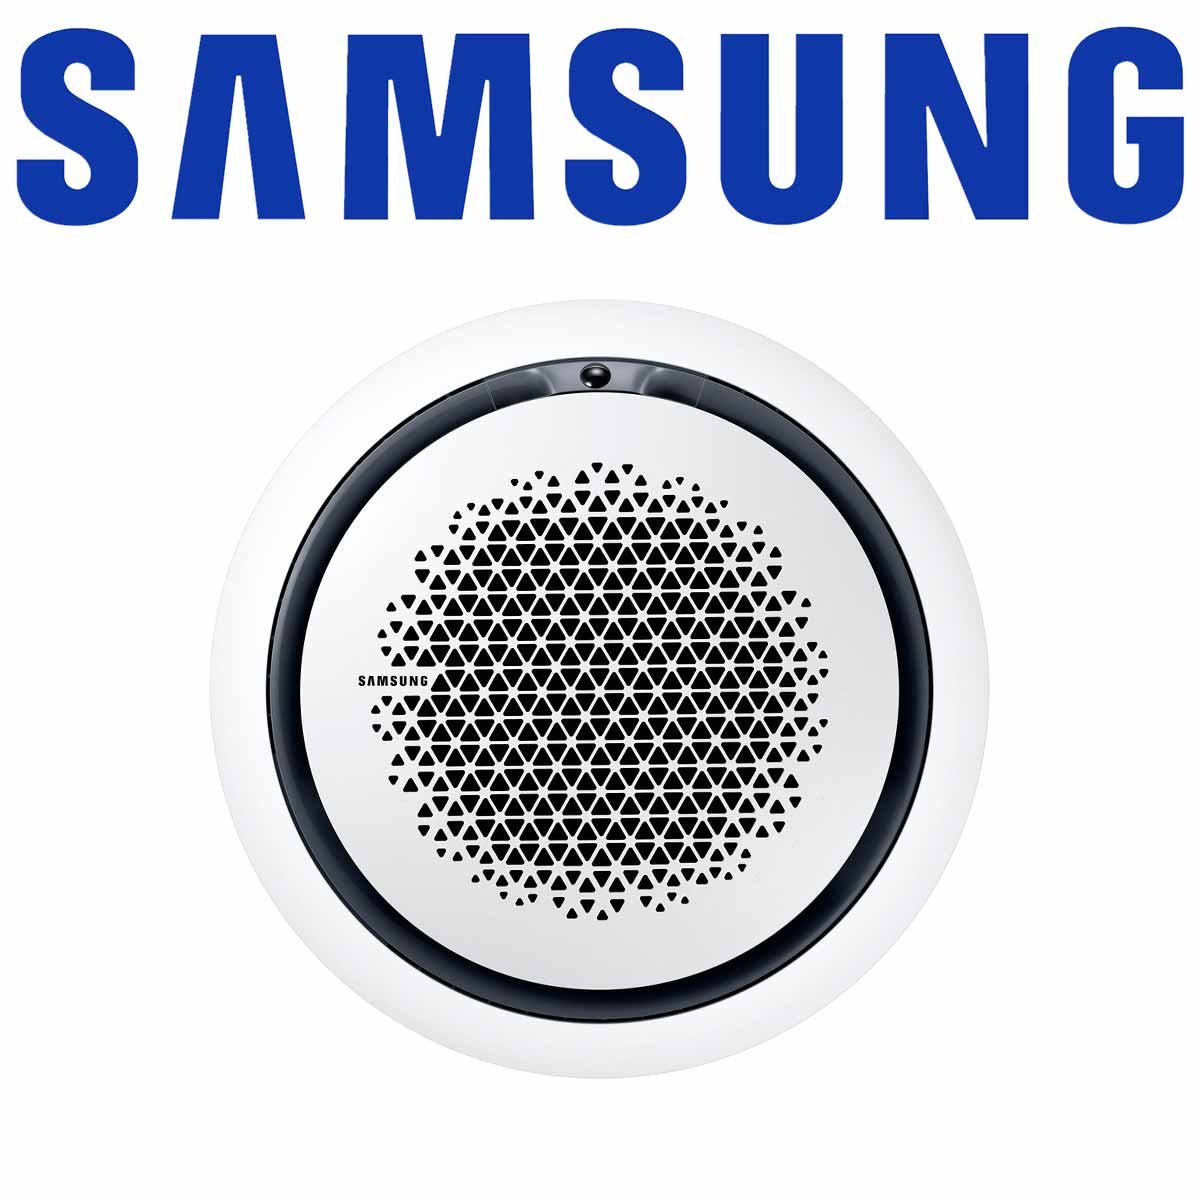 Samsung AC 071 WindFree 360° Kassette & Paneel rund weiß 7,1 kW |... von SAMSUNG